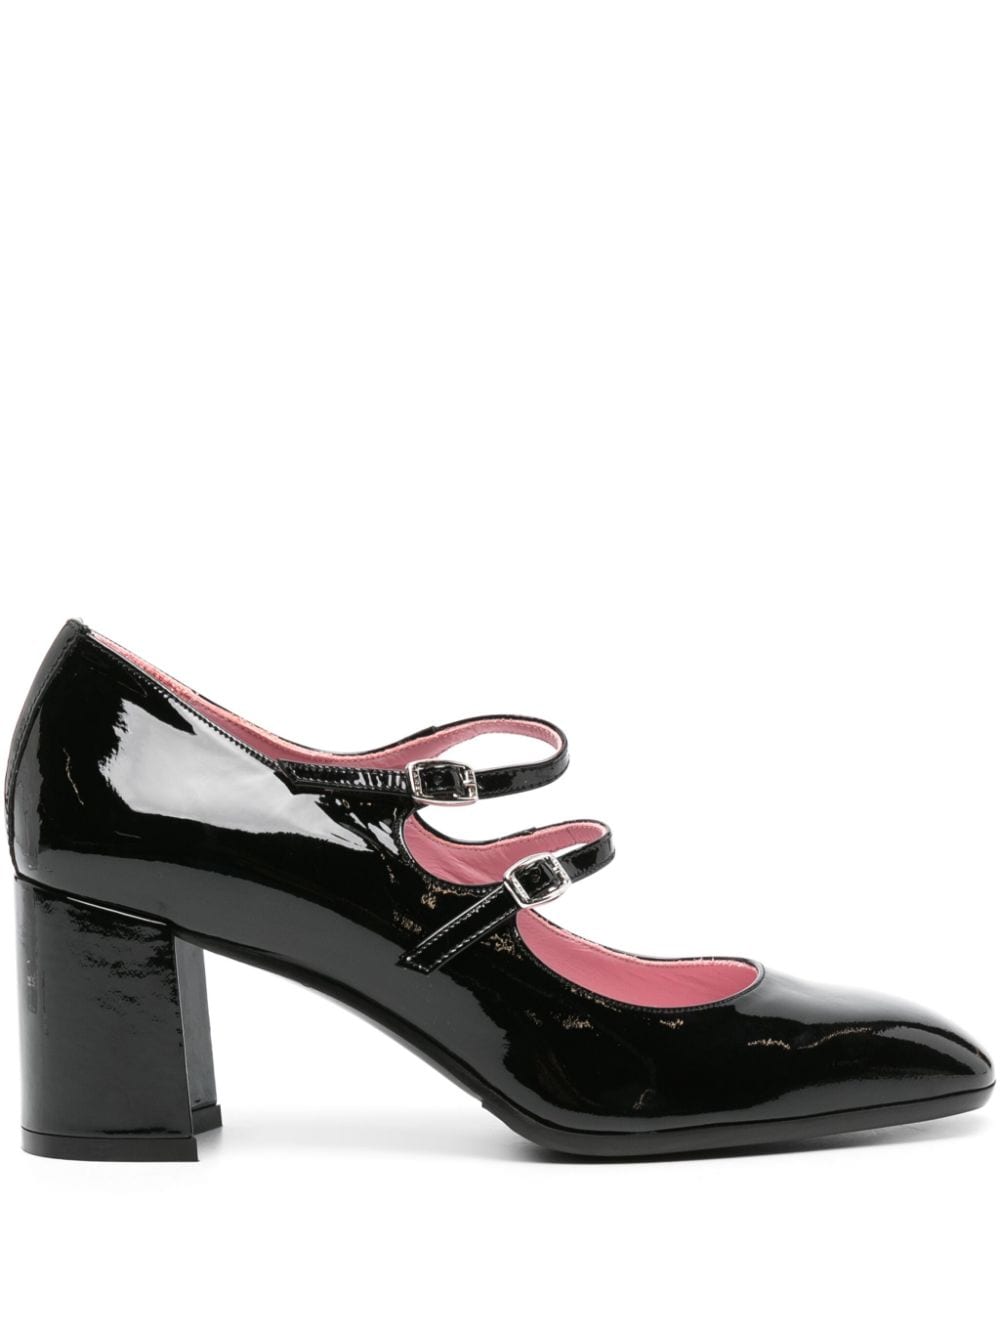 Carel Paris patent-leather Mary Jane pumps - Black von Carel Paris